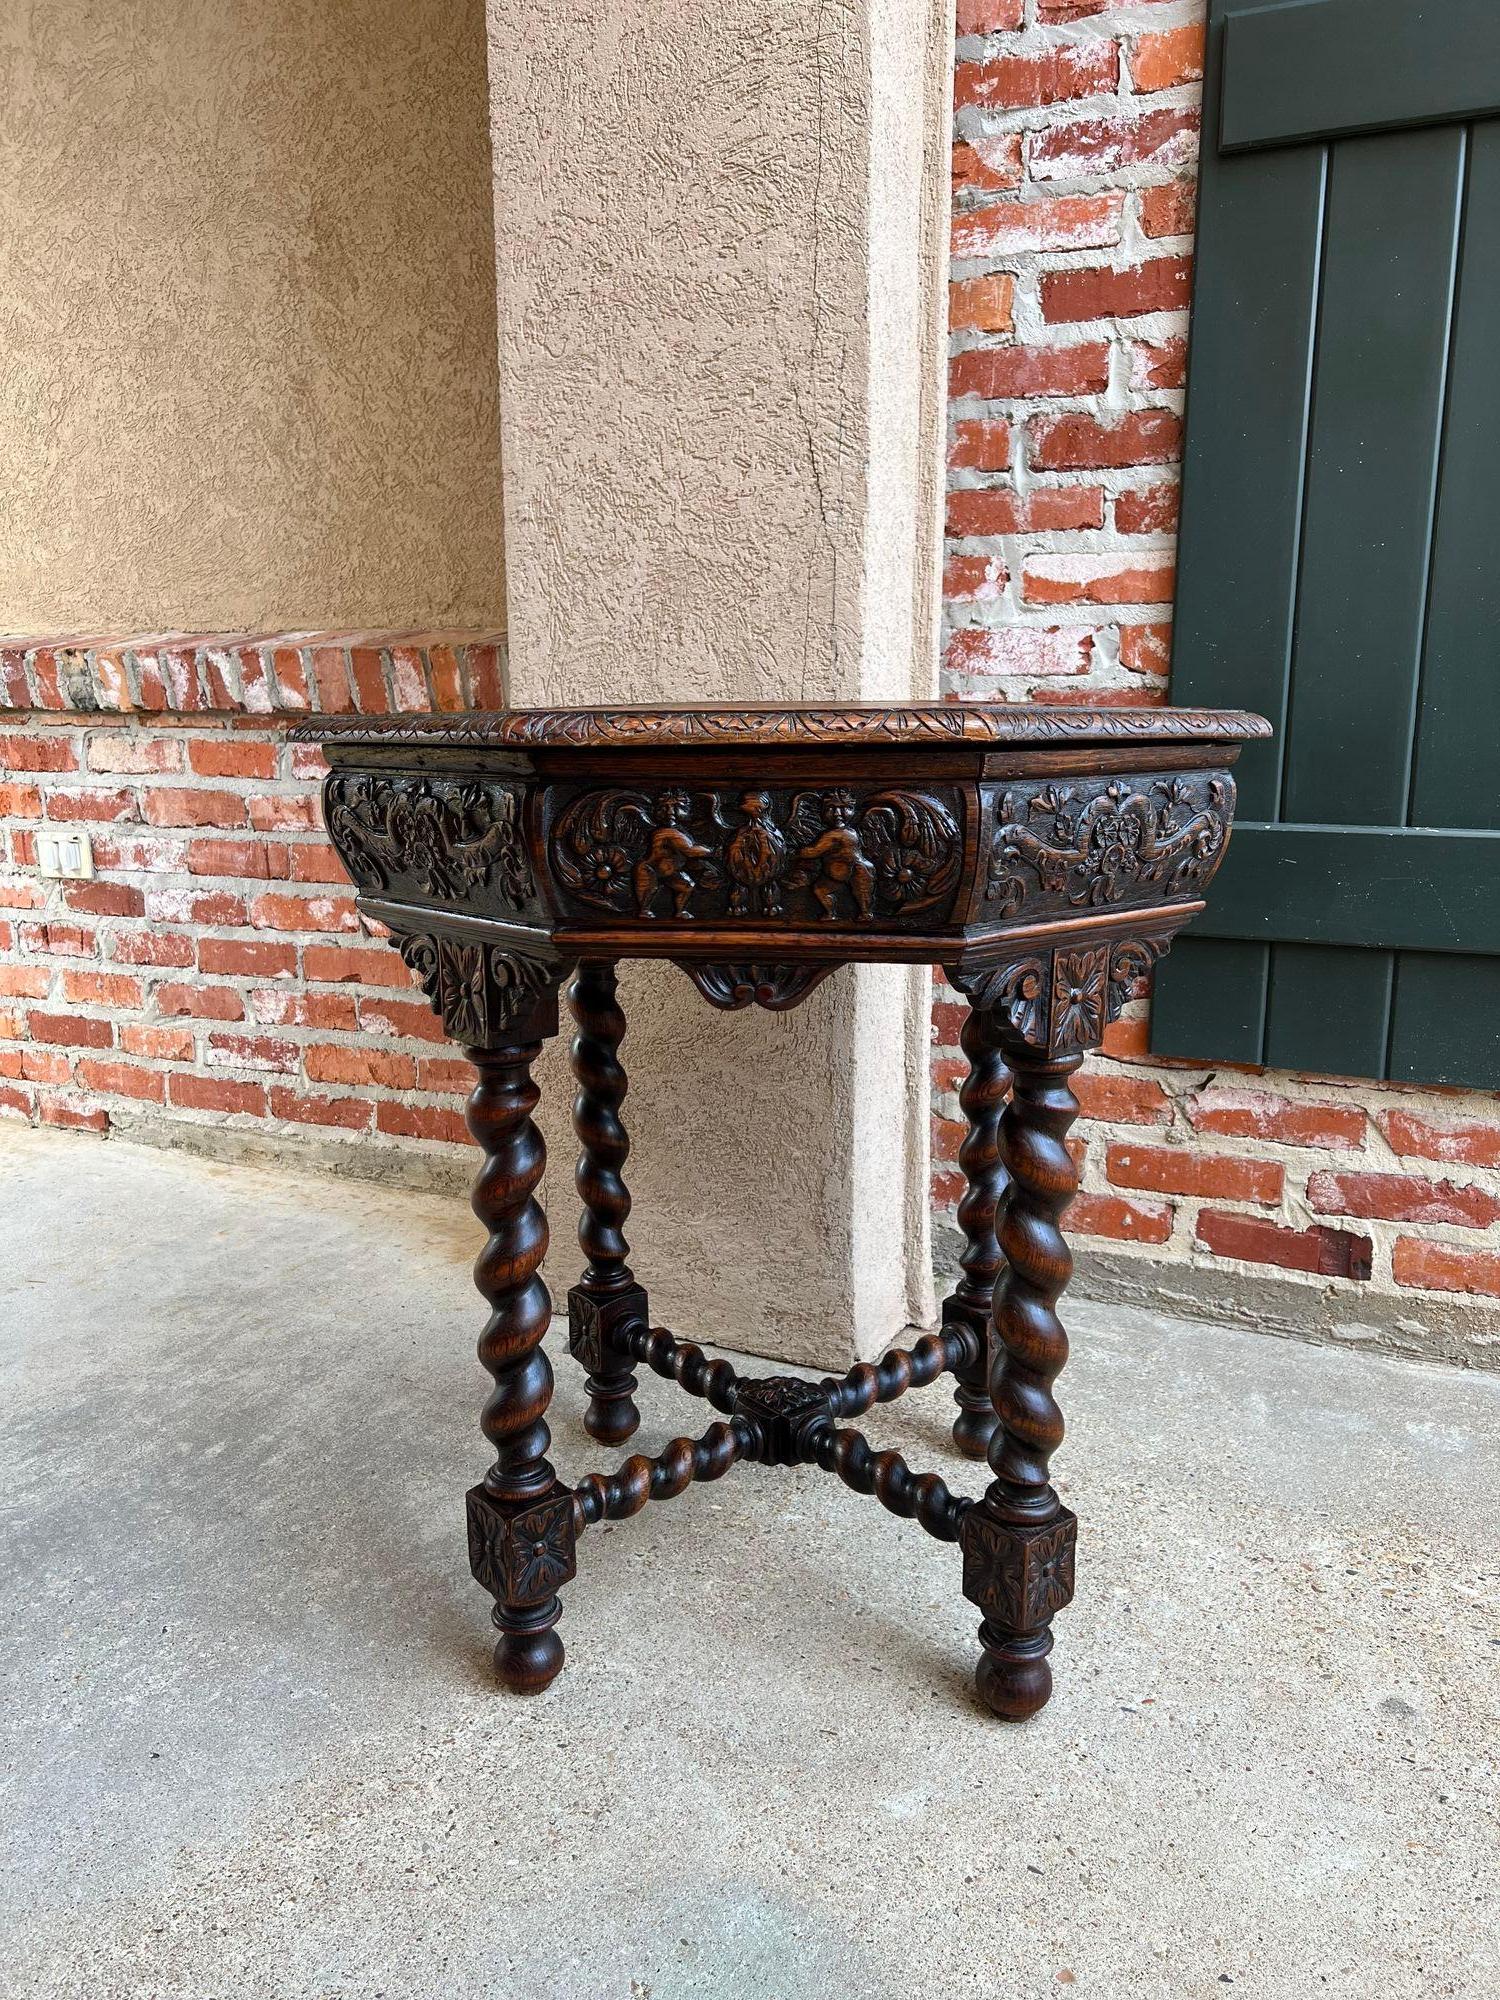 Antike Französisch Achteck Sofa Tisch geschnitzt Eiche Gerste Twist Louis XIII Renaissance.

Direkt aus Frankreich, ein fabelhafter antiker französischer Achteck-Tisch mit beeindruckenden Details, einschließlich Gerstenkornbeinen und